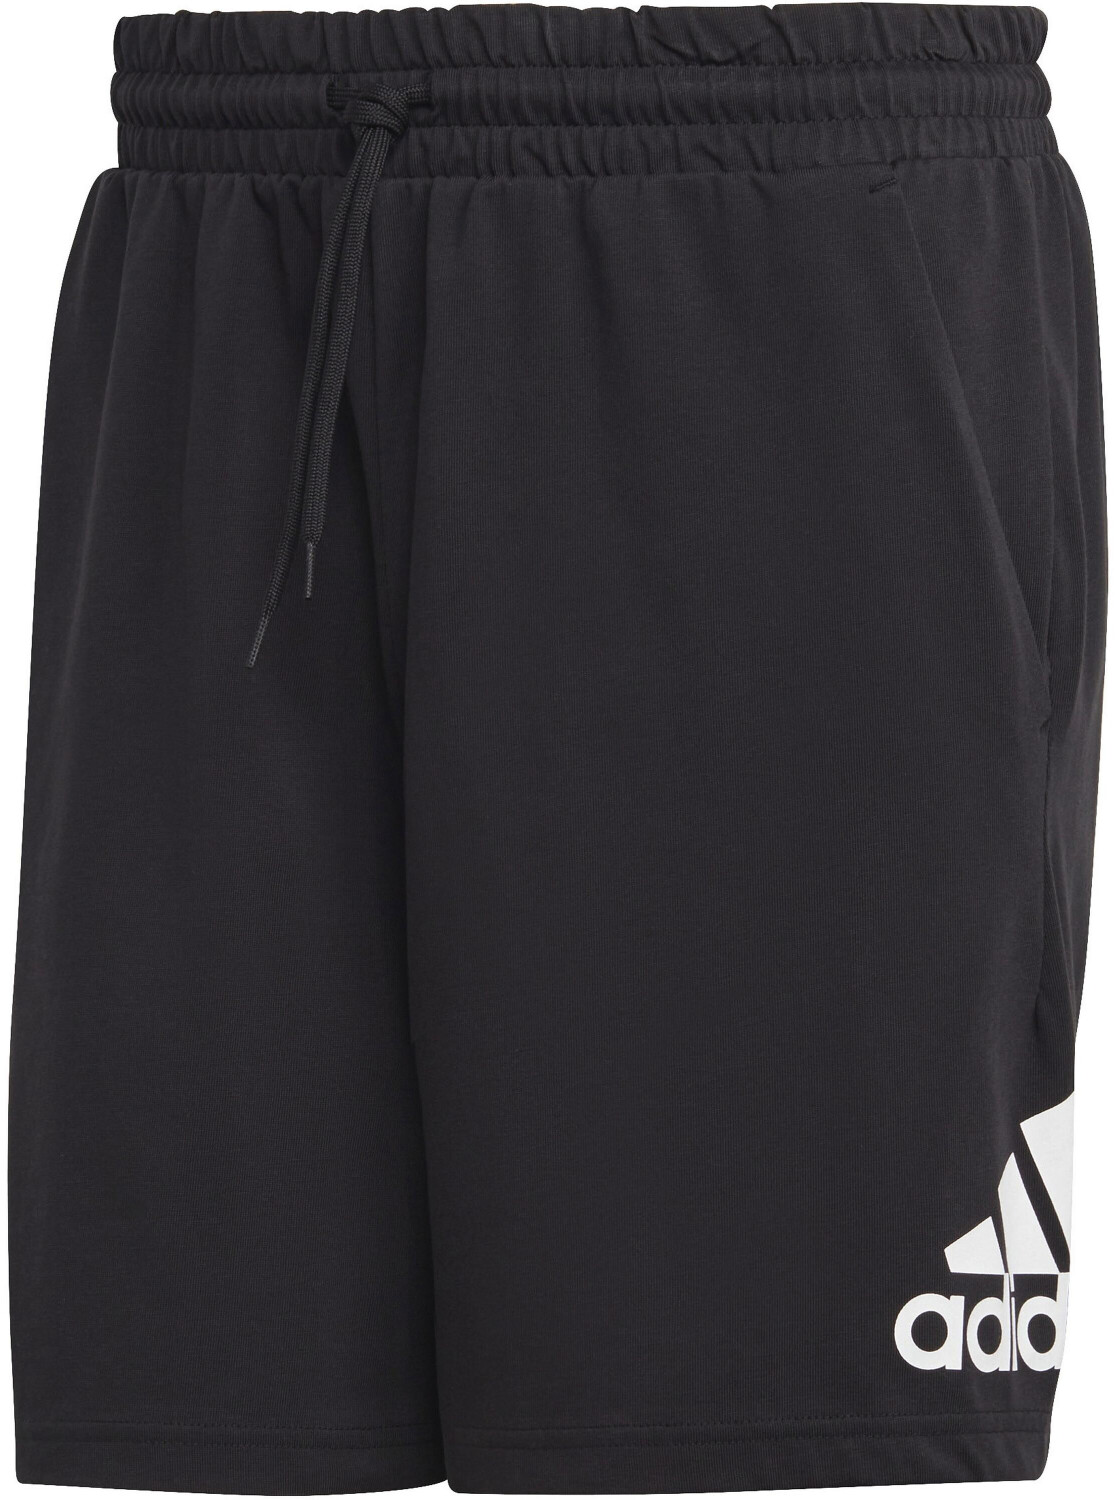 Adidas Shorts Men (IC9375) black/white ab 13,27 € | Preisvergleich bei ...